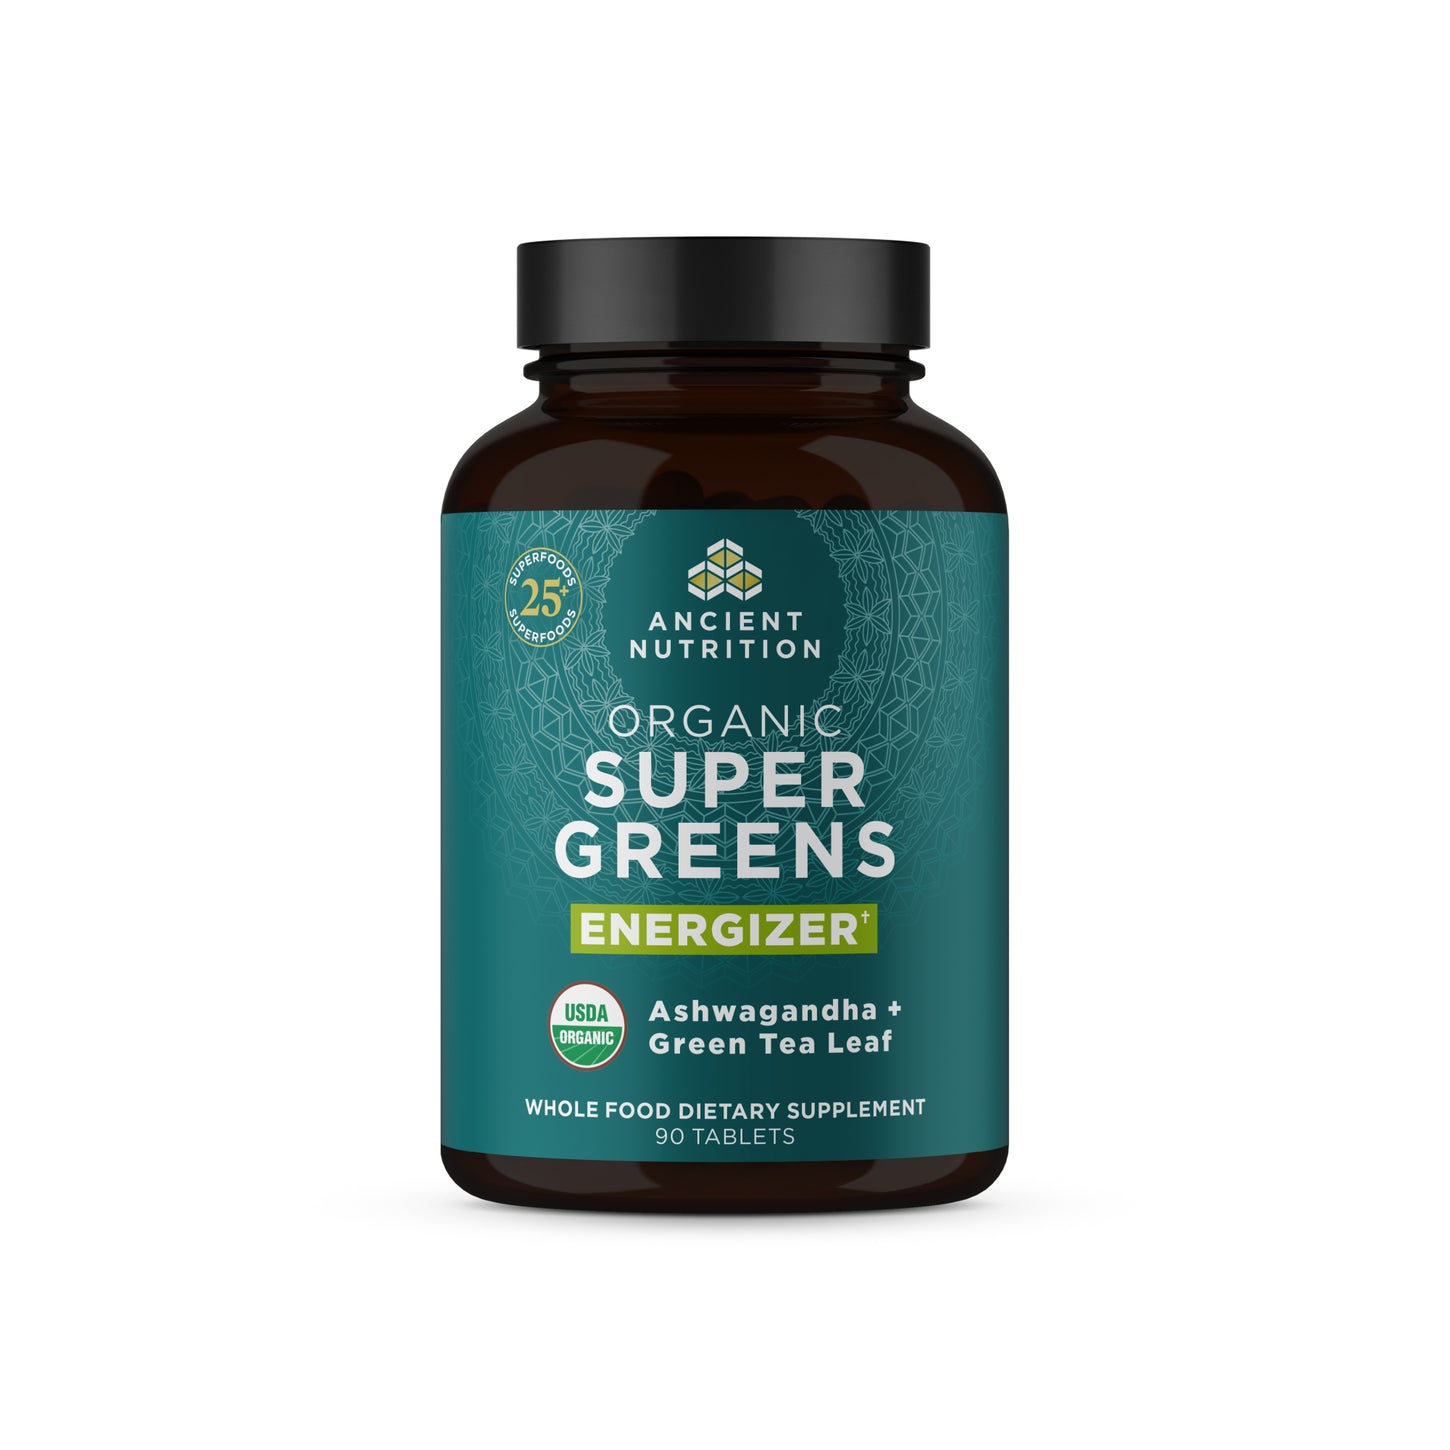 Organic Super Greens Energizer Tablet bottle